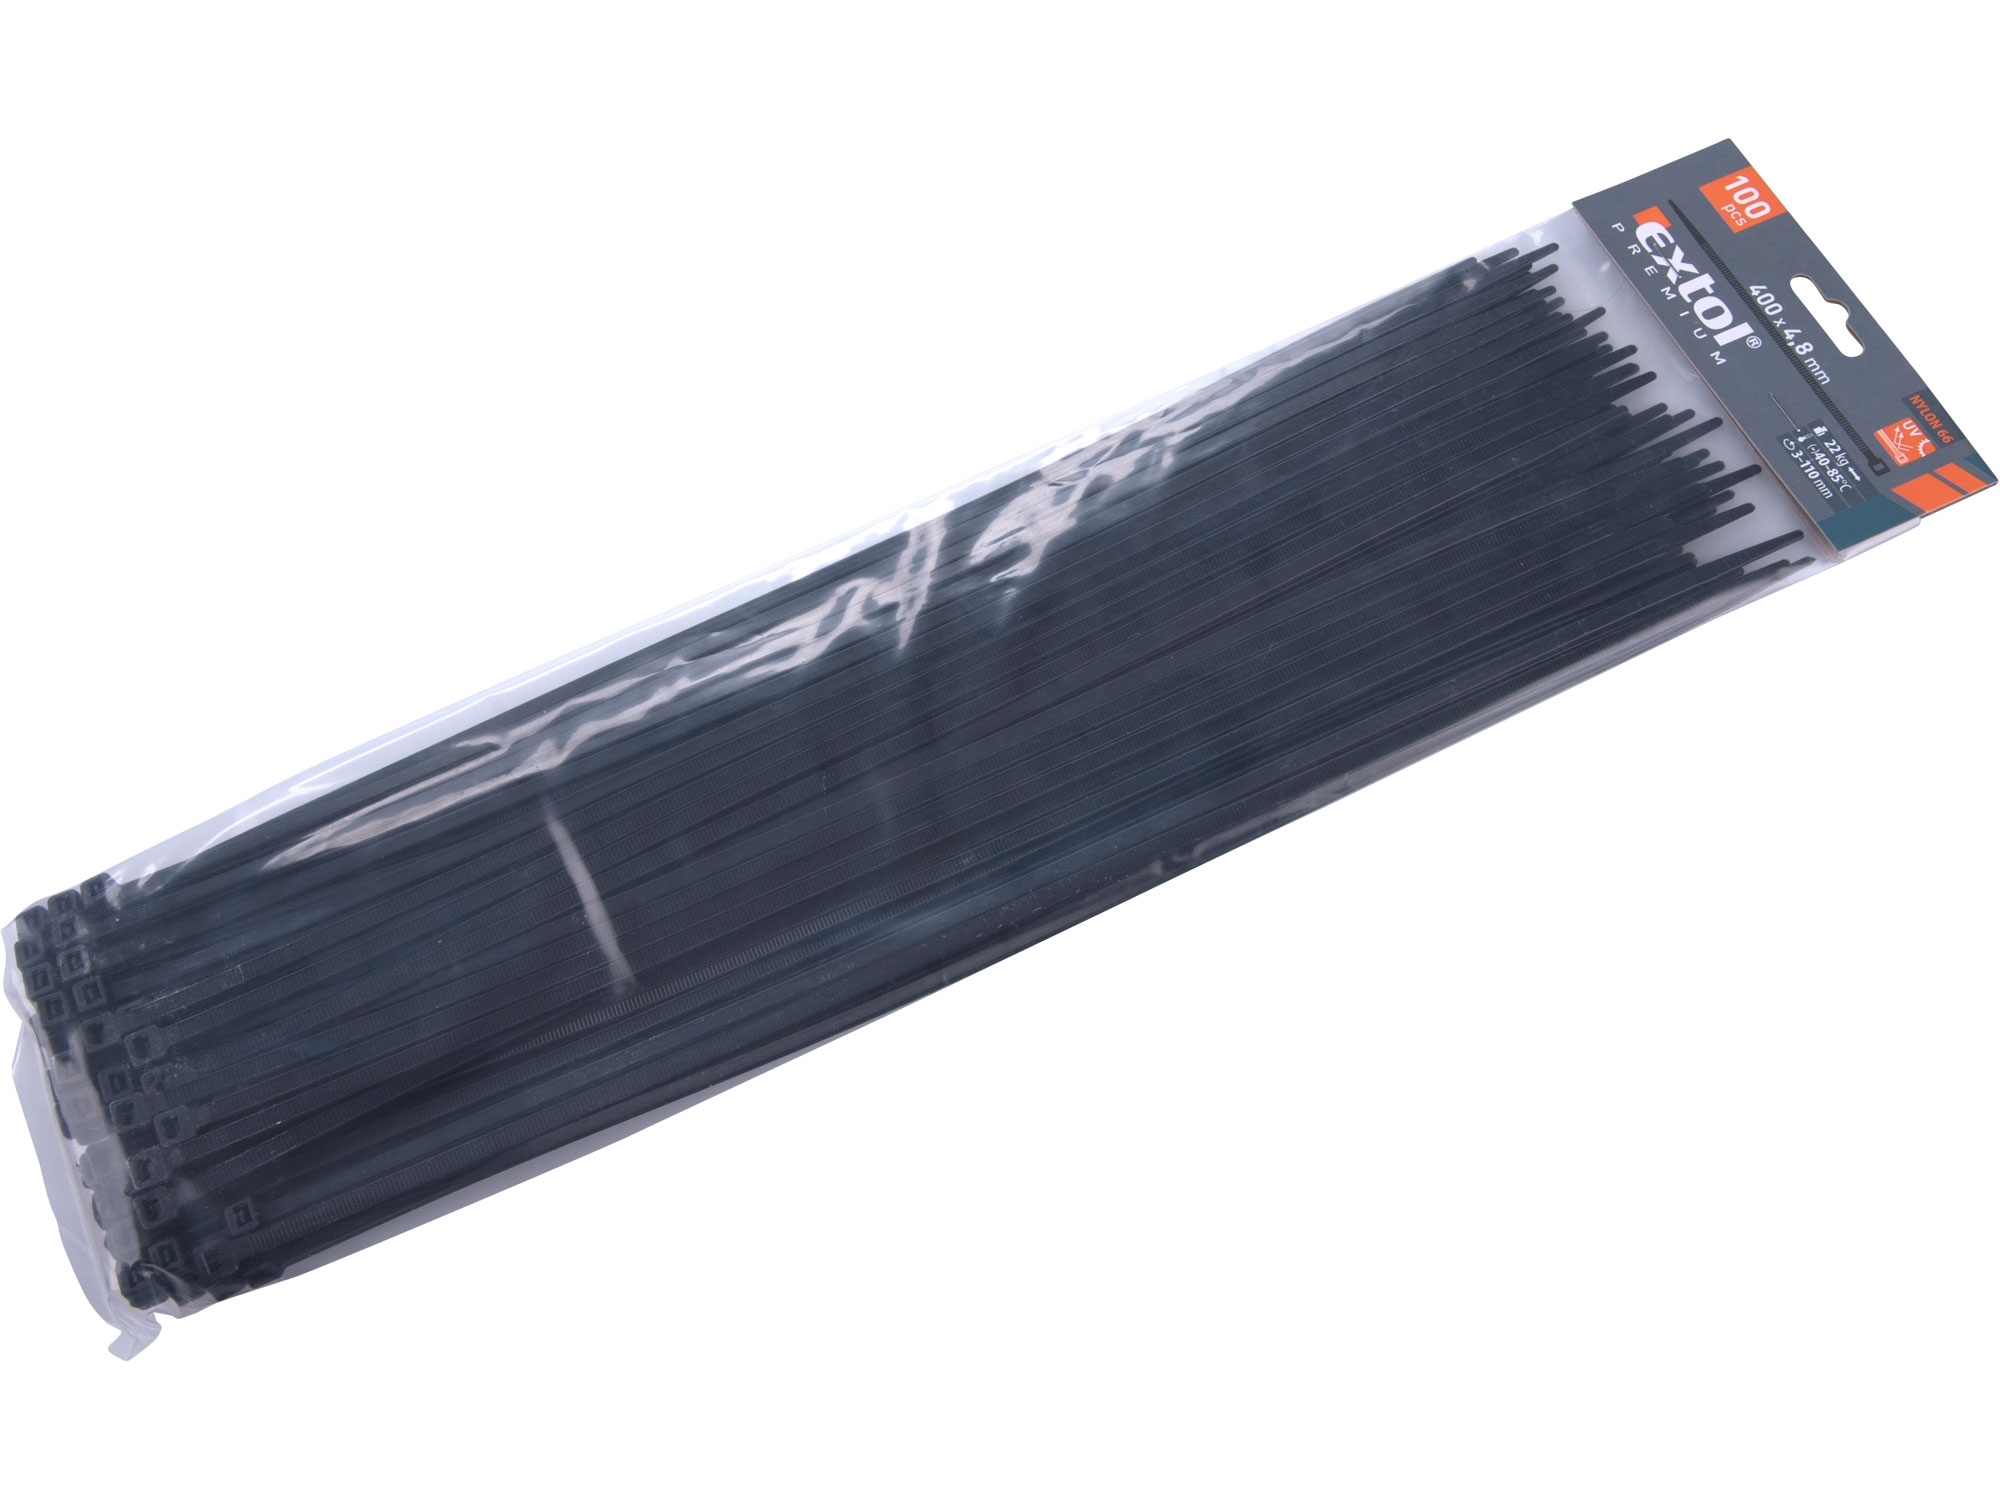 pásky stahovací na kabely černé, 400x4,8mm, 100ks, nylon PA66